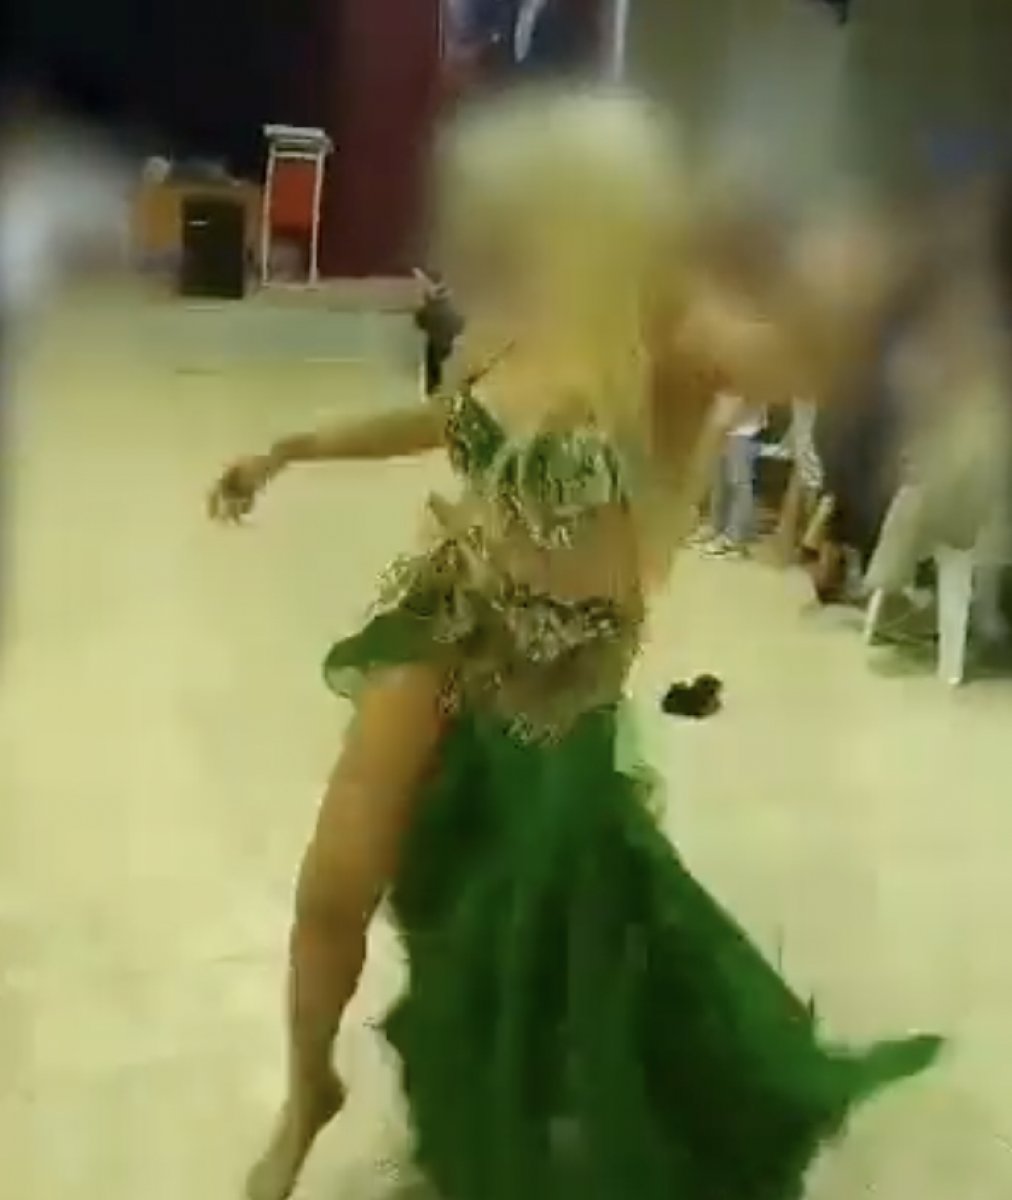 Bursa daki okulda dansözlü etkinlik: Müdür görevden alındı #1